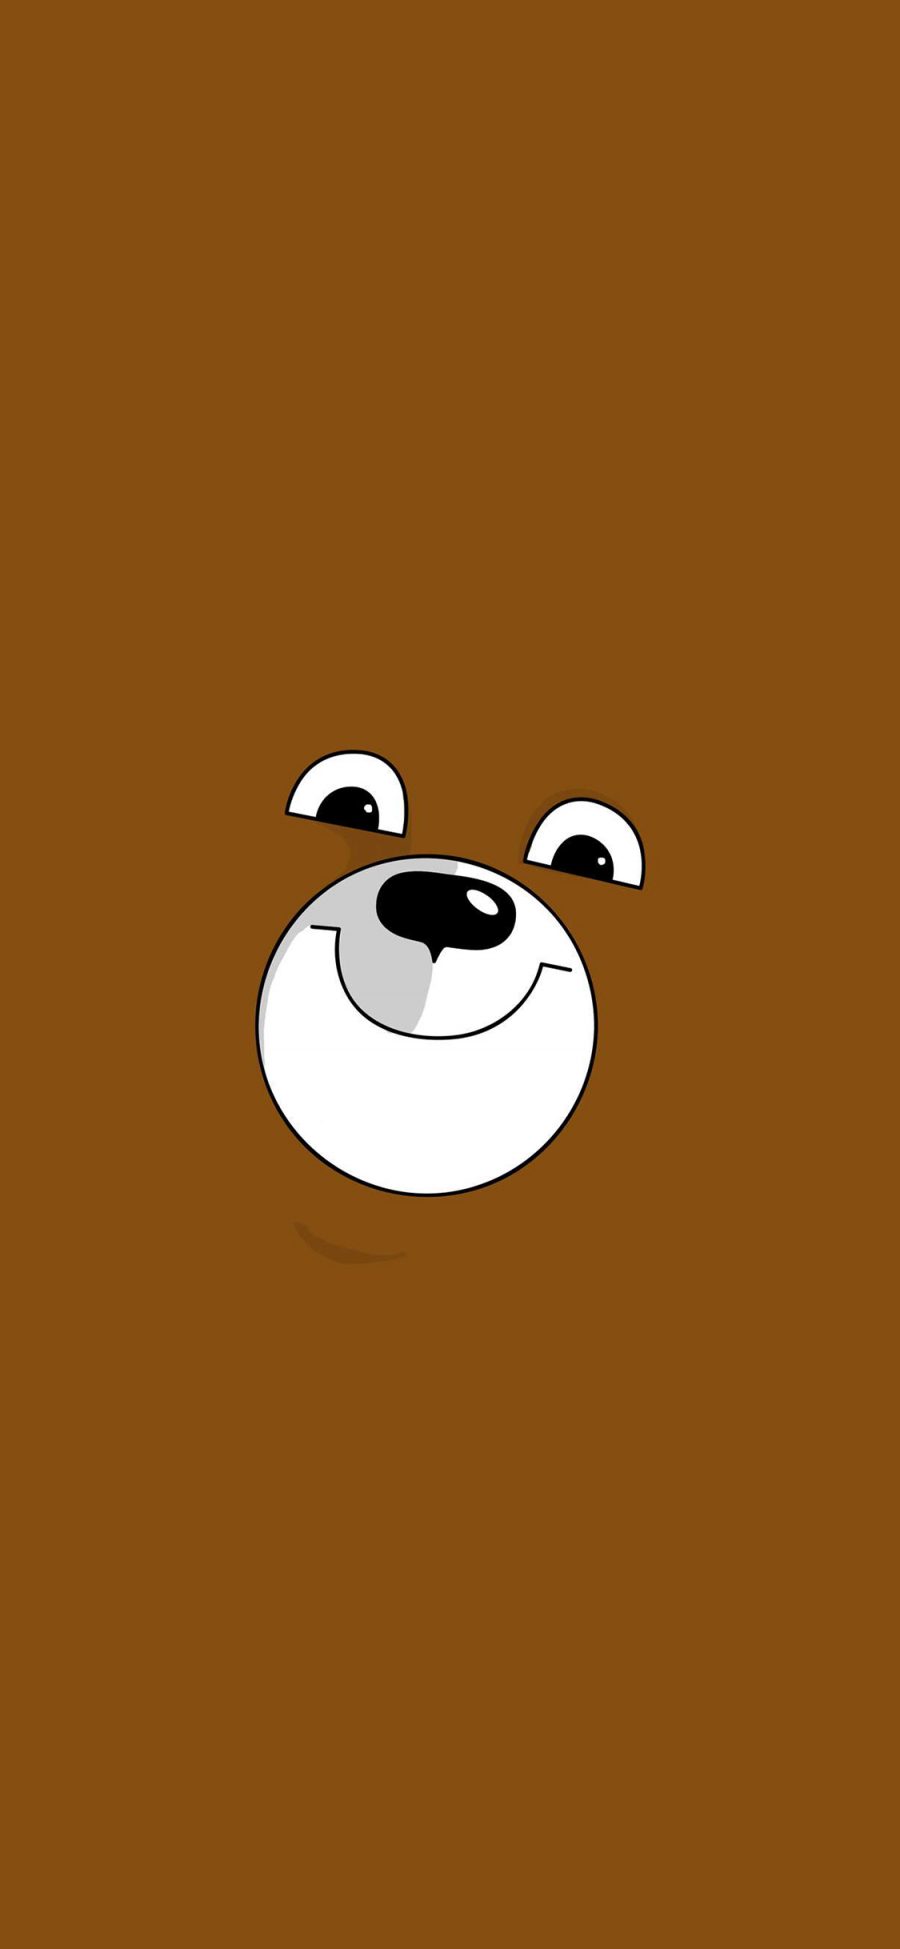 [2436×1125]熊 卡通 棕色 简笔画 可爱 笑脸 苹果手机动漫壁纸图片